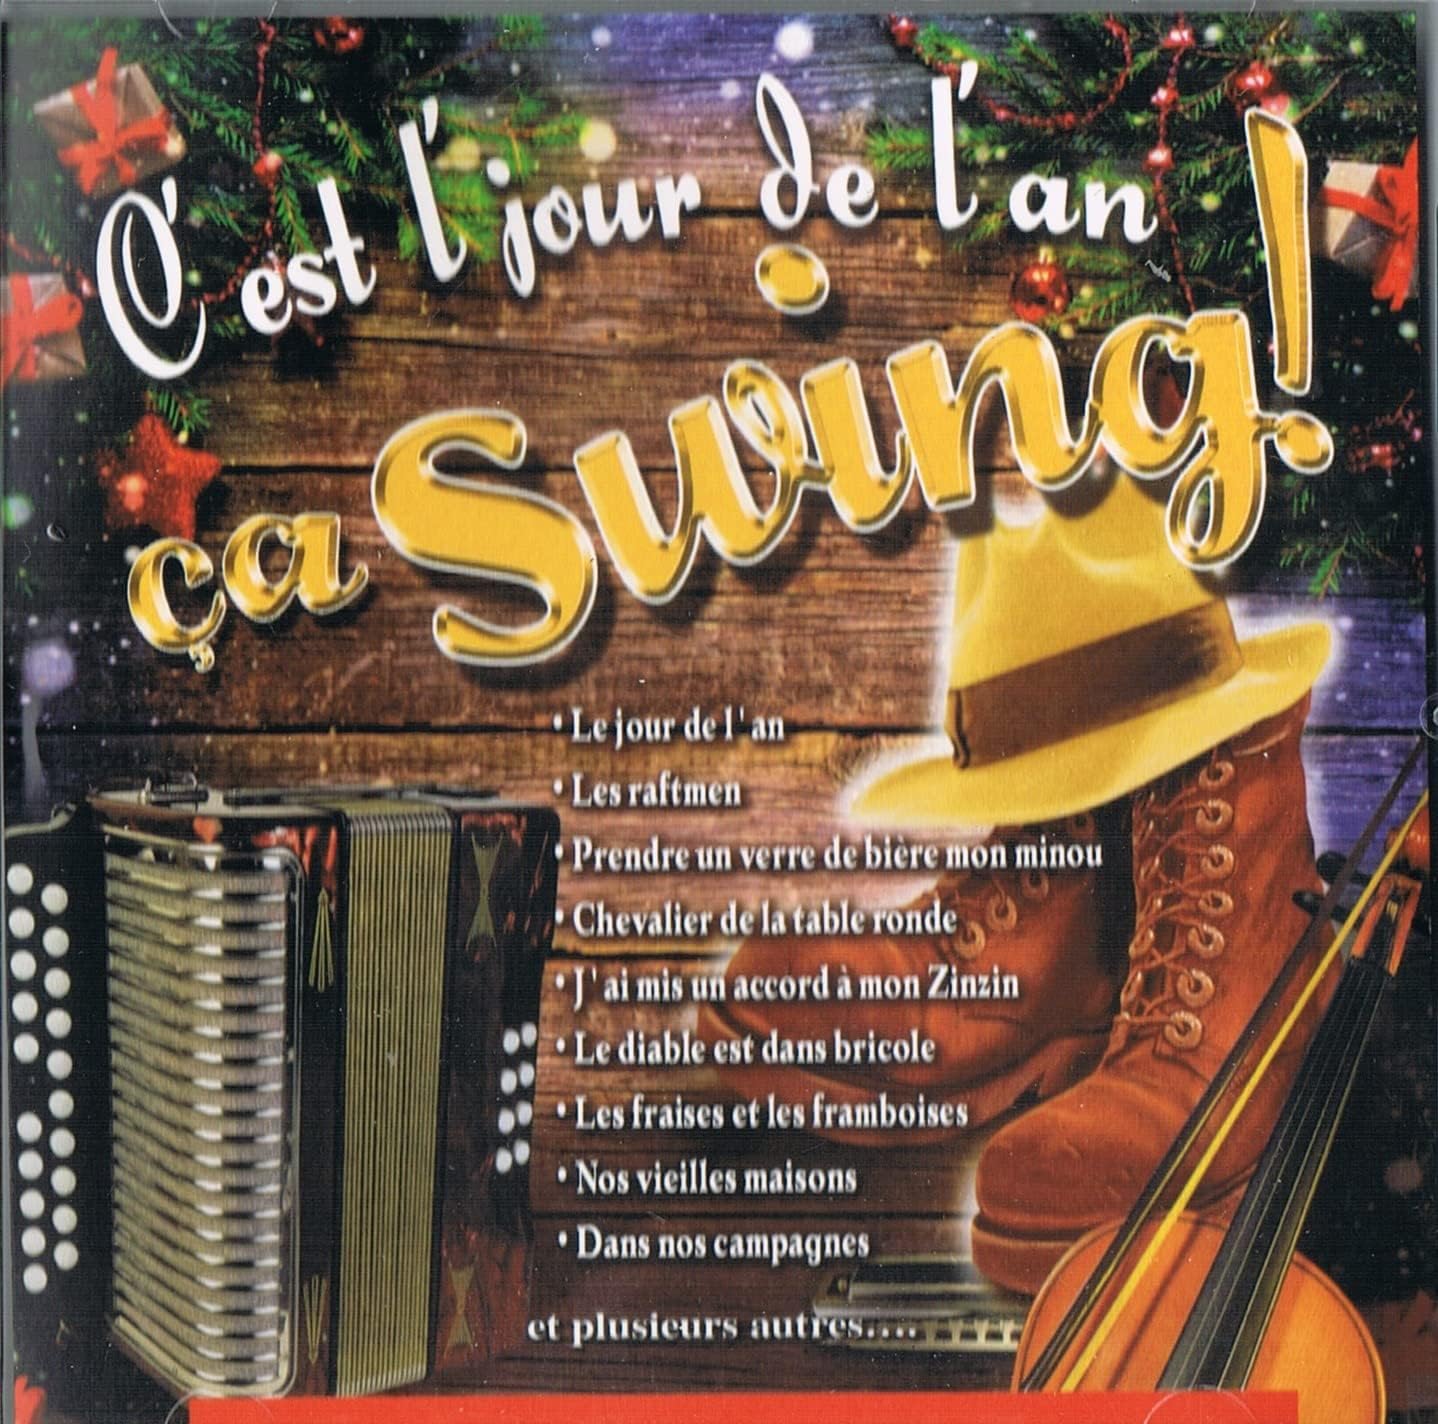 C'est L'Jour De L'An Ca Swing! [audioCD] La Bolduc, Oscar Thifault, Andre Bertrand et plus... Artistes Variés